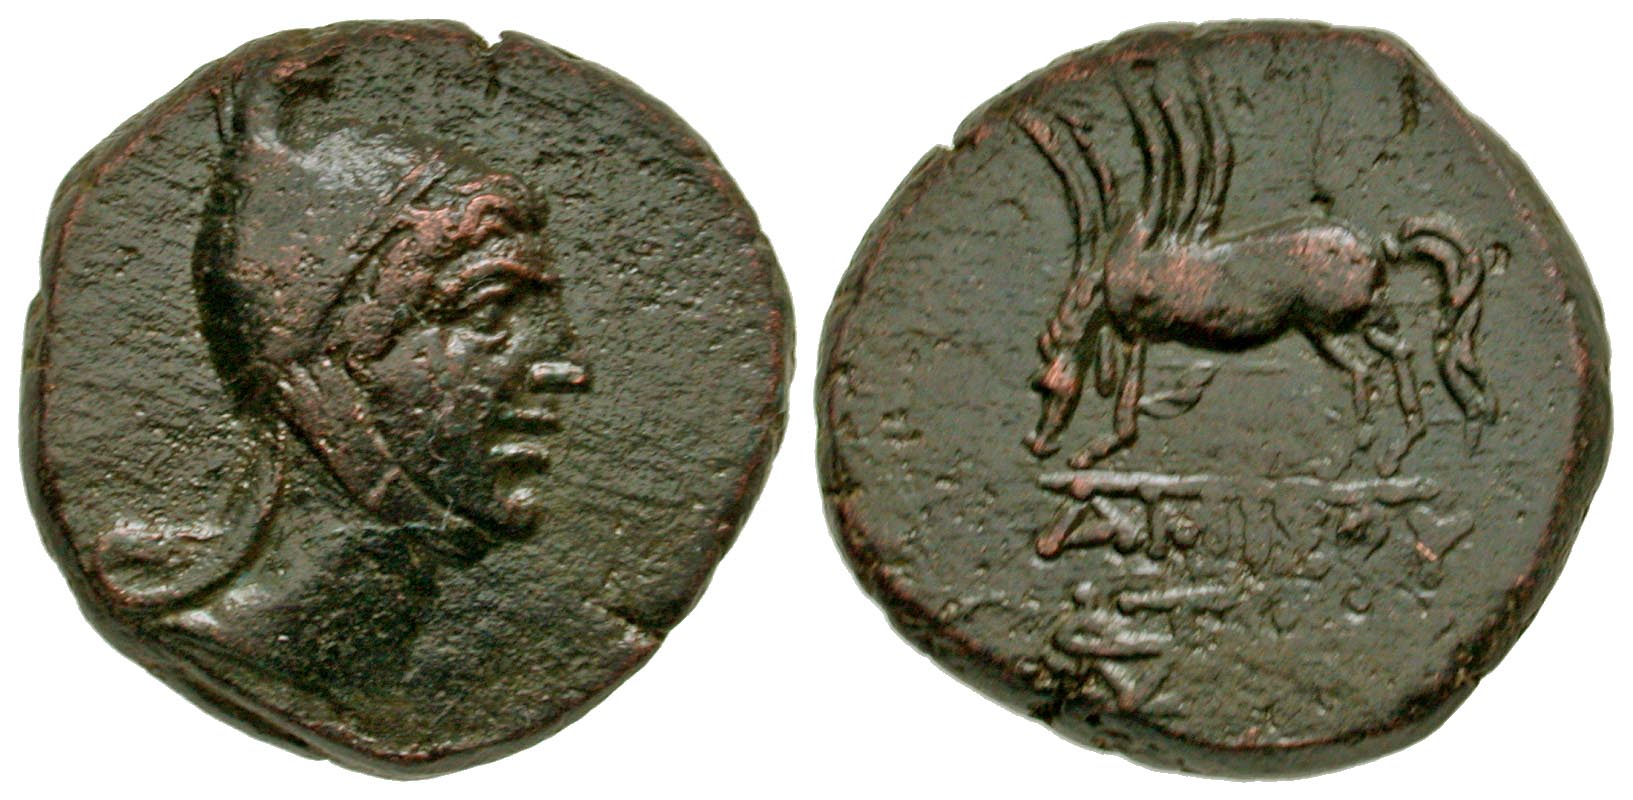 Pontic Kingdom, Pontos. Amisos. Civic issue under Mithradates VI. 120-63 B.C. AE 25. Struck ca. 85-65 B.C. 